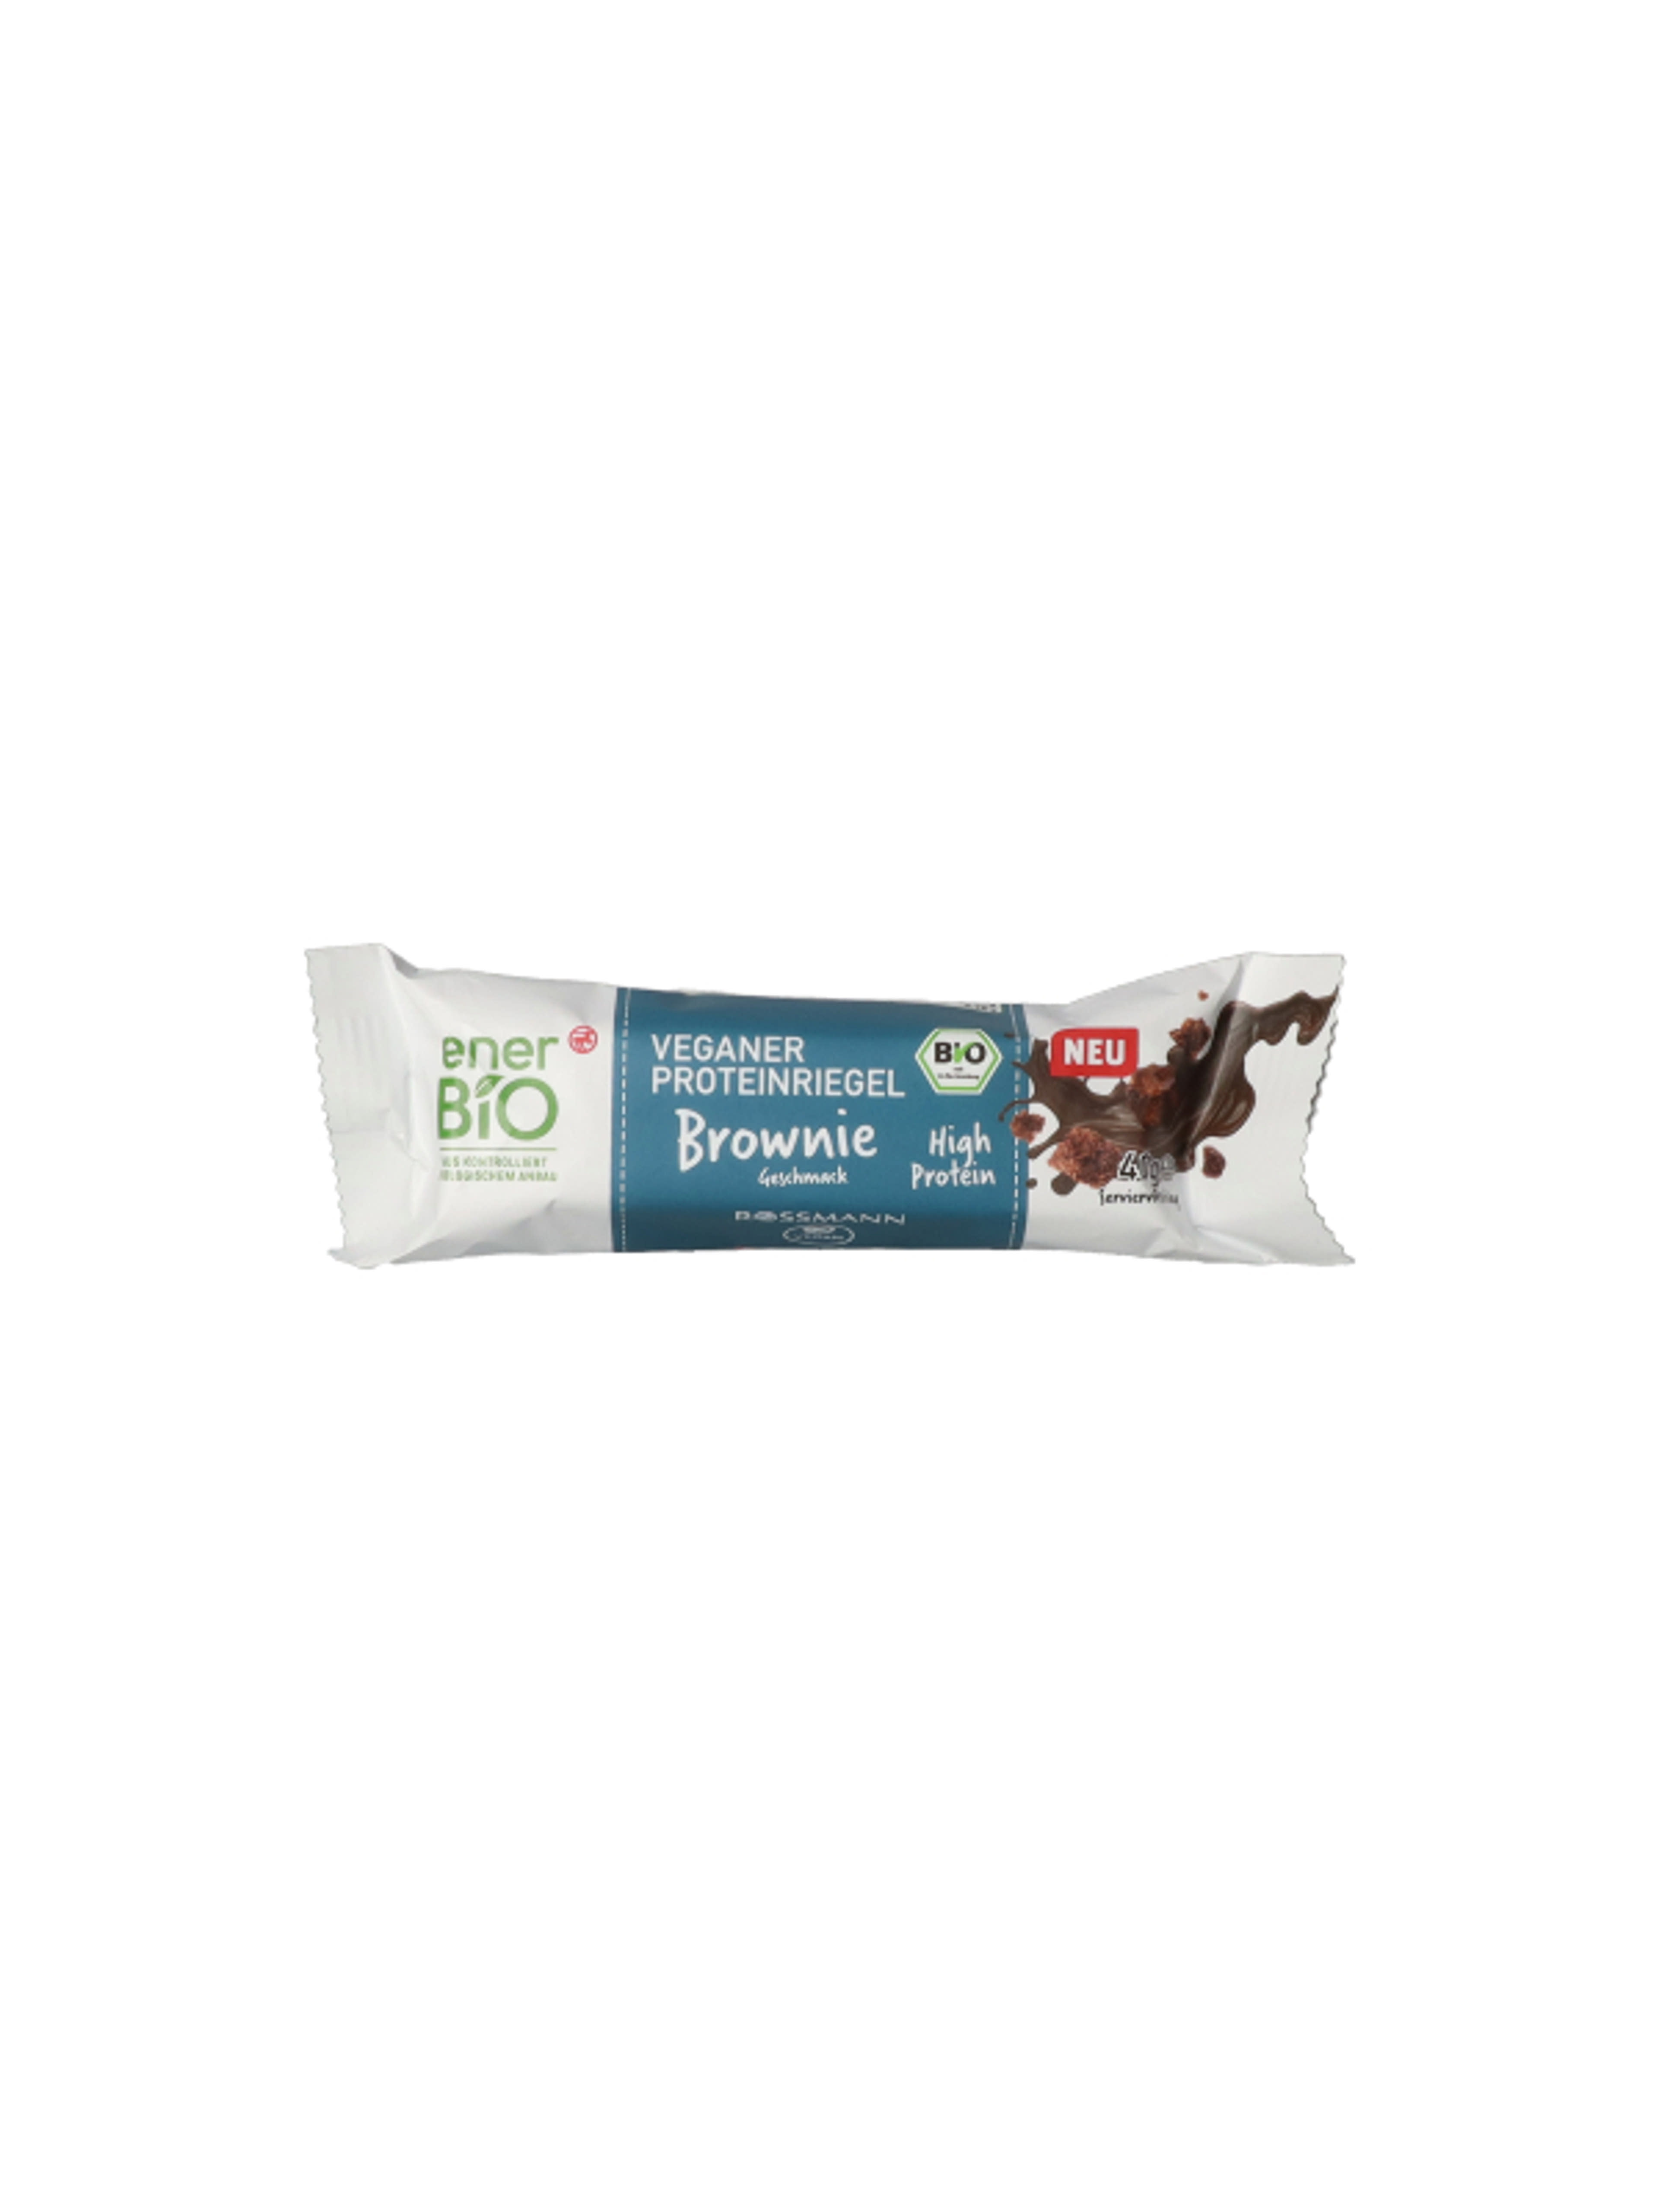 Ener-bio fehérjeszelet, csokoládé & brownie ízesítésű - 40 g